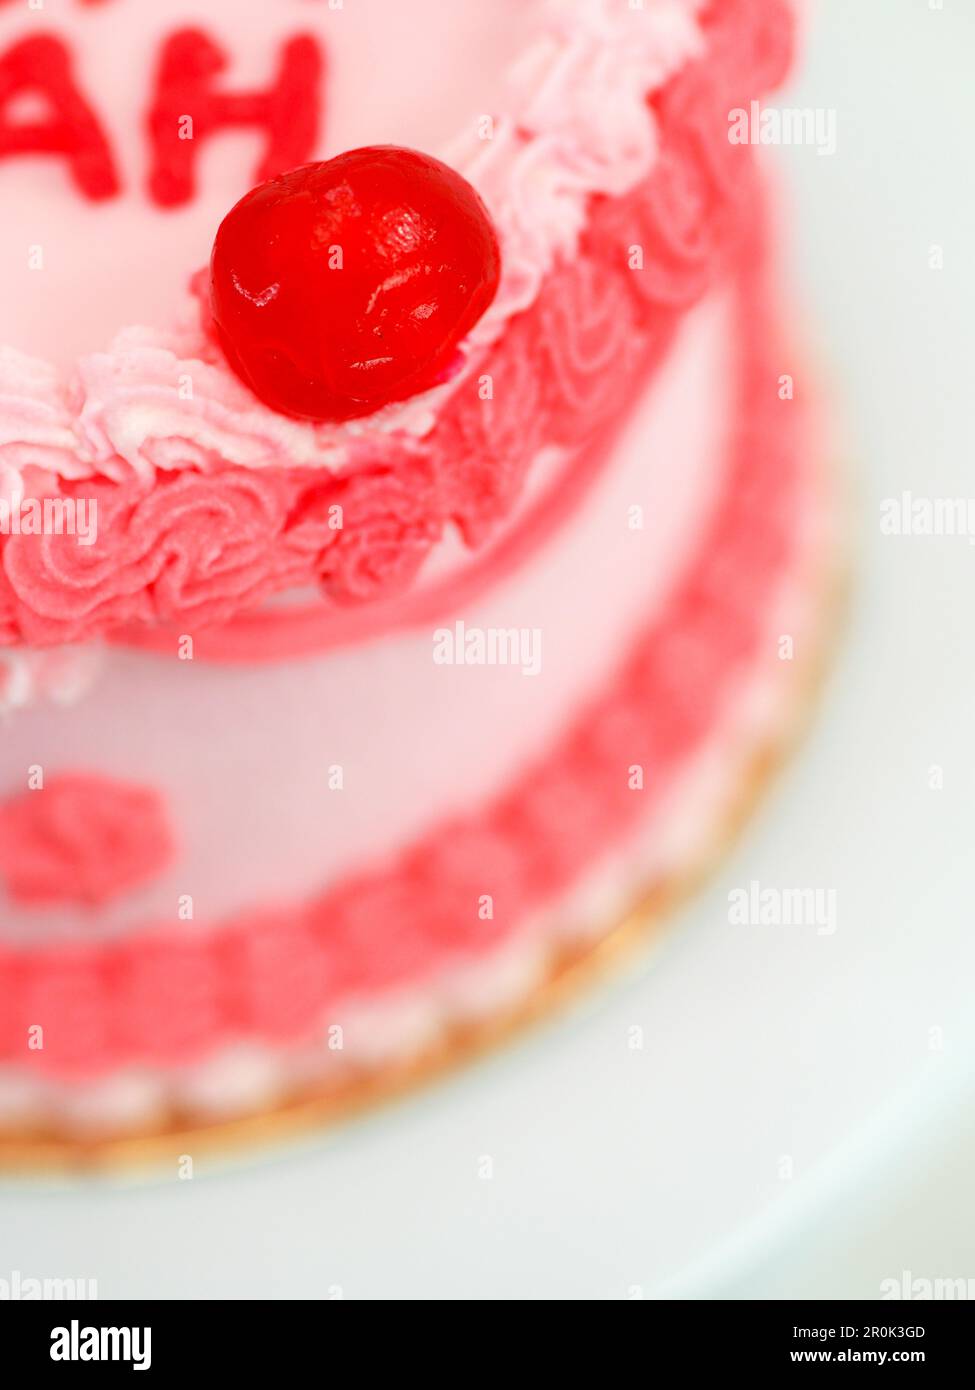 gâteau rouge rose givré pour la fête des mères avec un texte amusant garniture meilleure maman evah sur fond blanc studio Banque D'Images